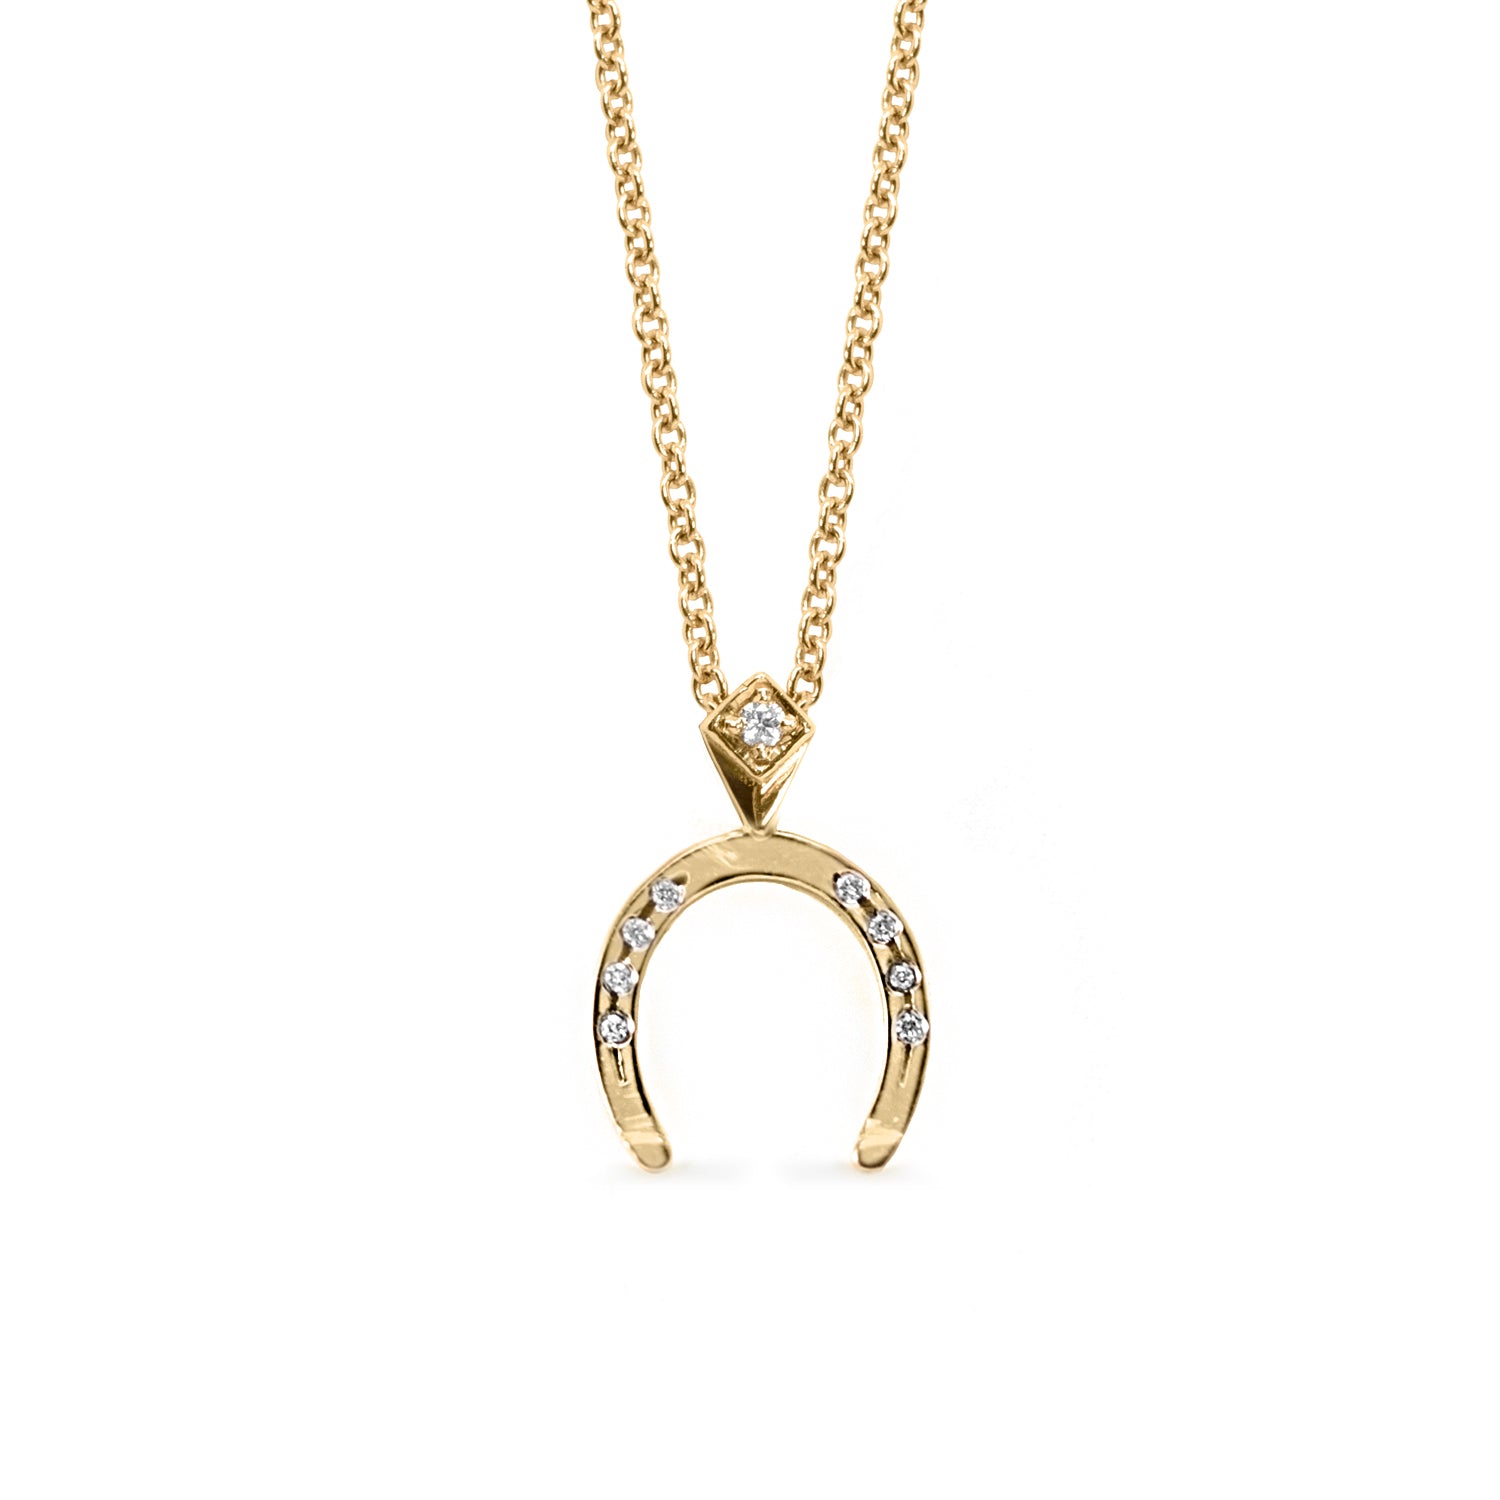 horseshoe charm necklace with diamonds